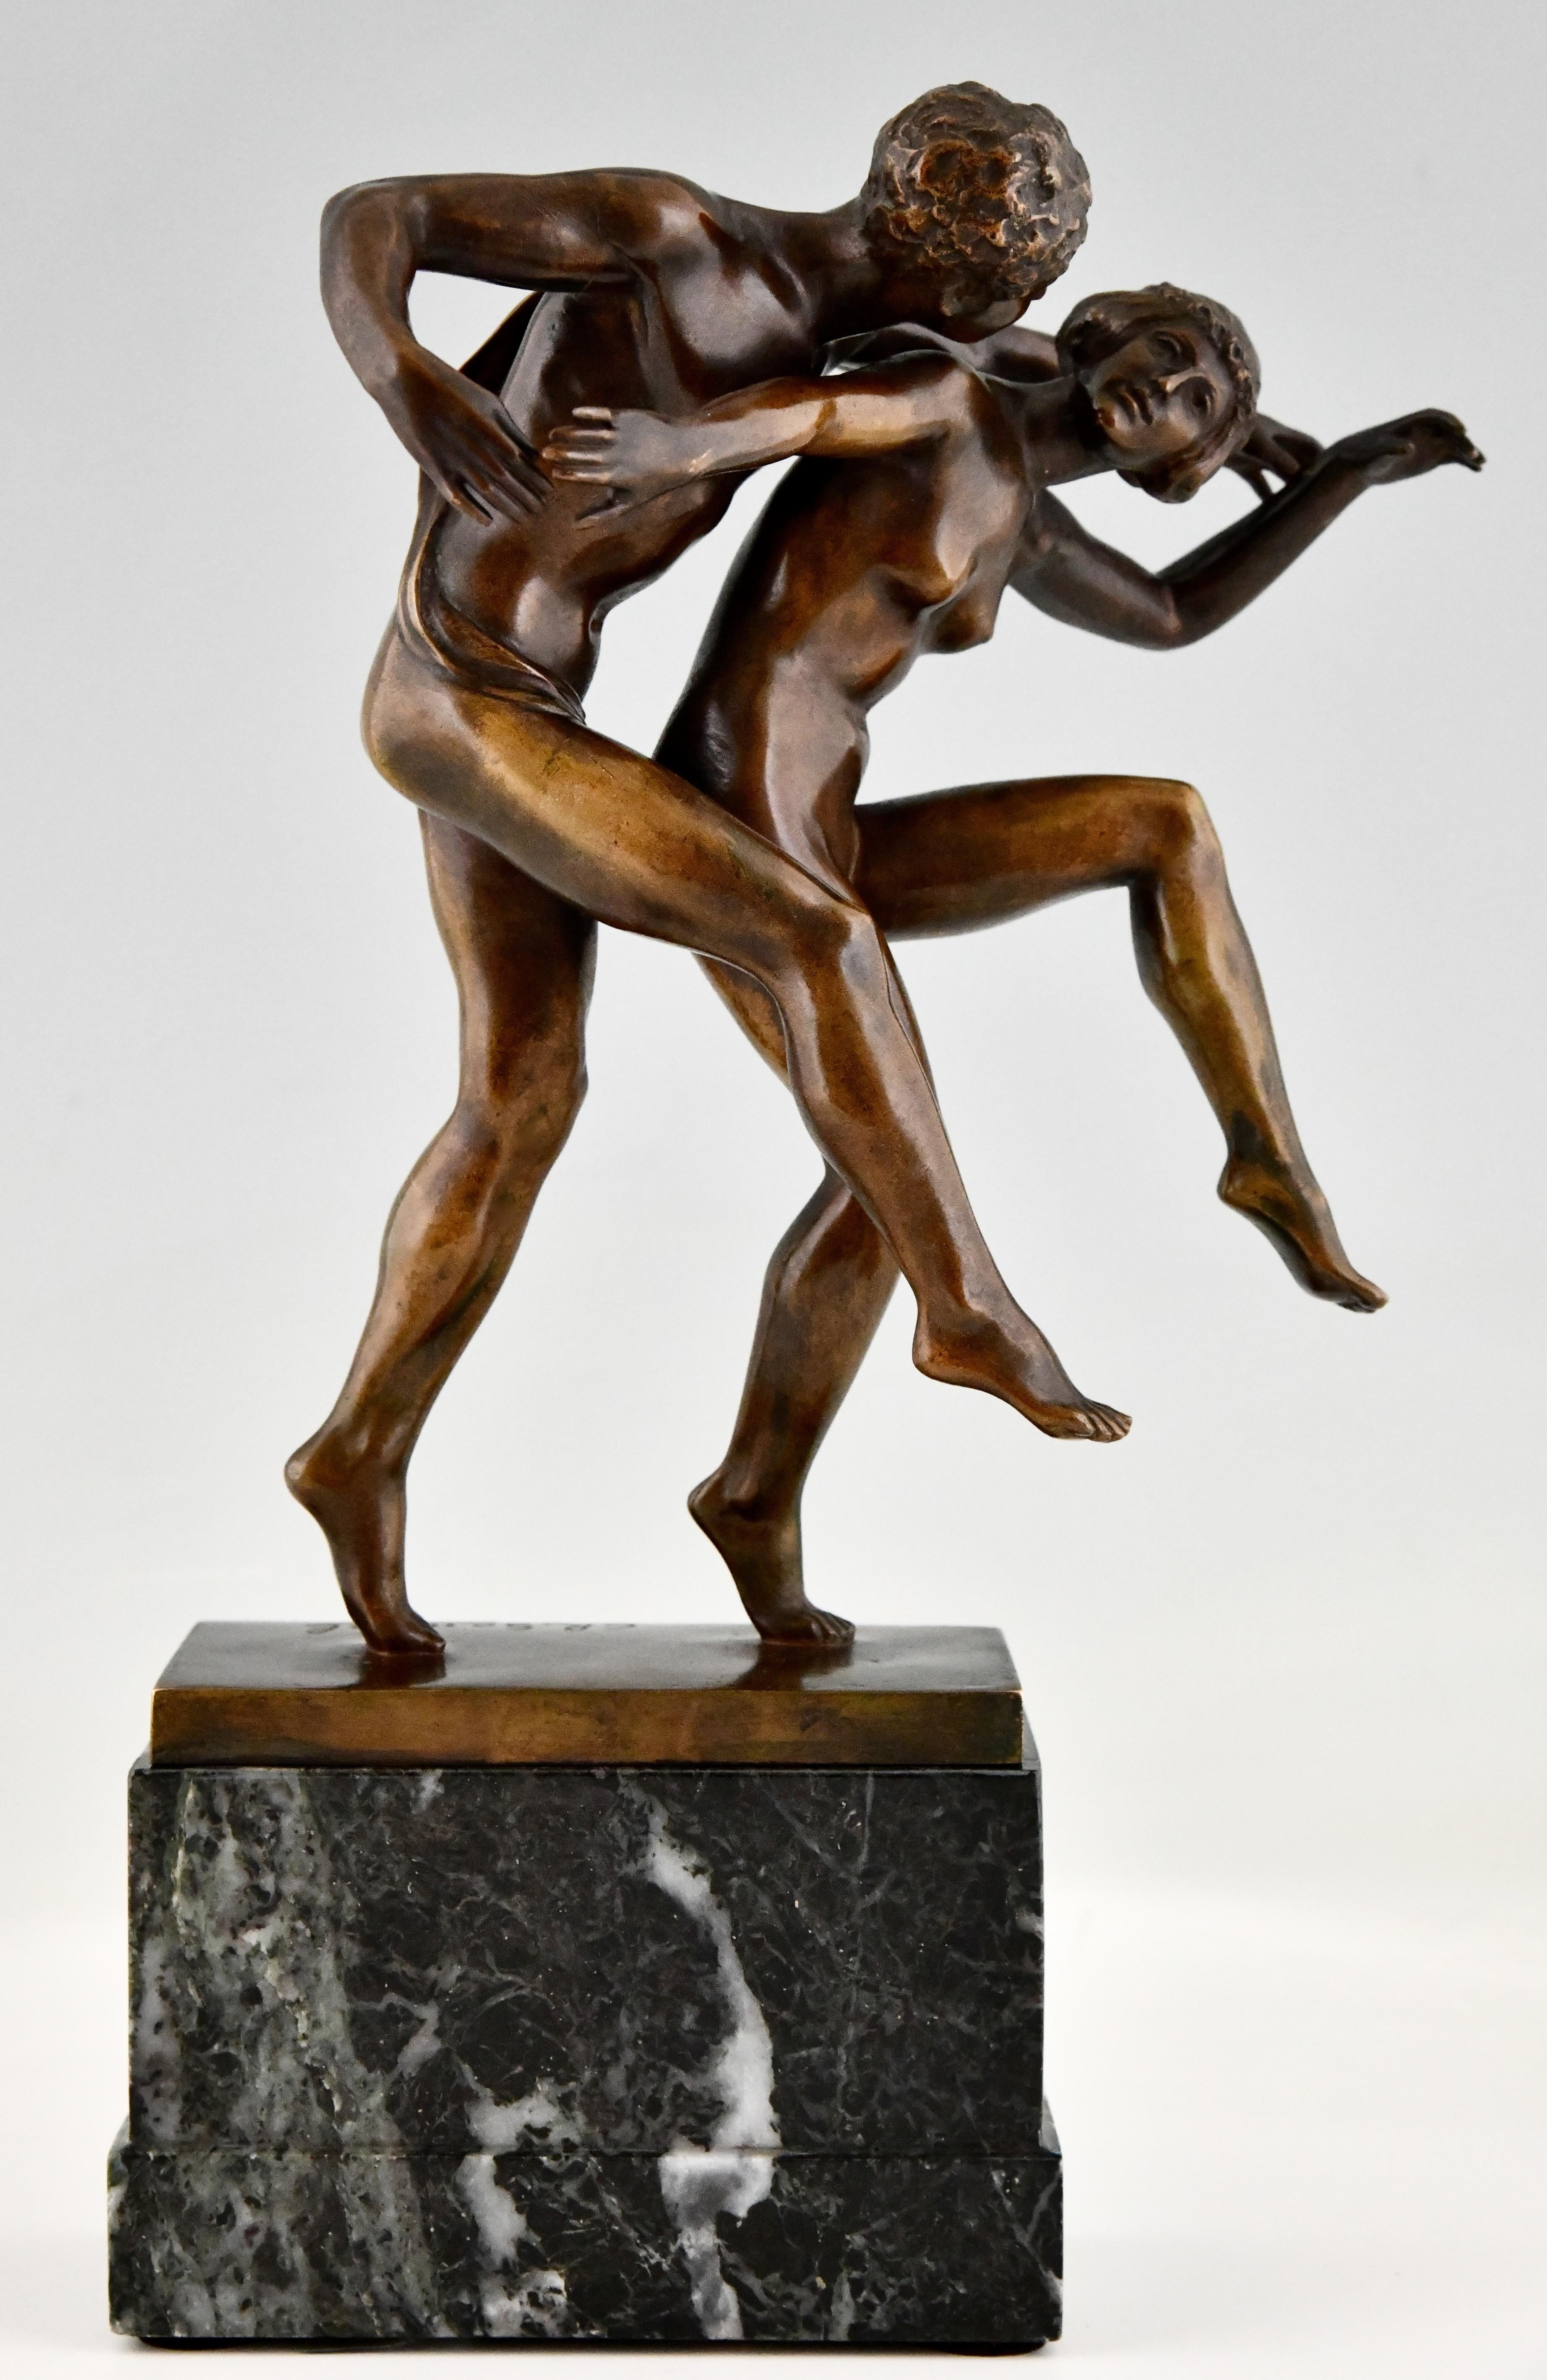 Sculpture en bronze Art nouveau d'un couple de nus dansant, La Danse de Charles Samuel. 
Bronze patiné sur une base en marbre. 
Belgique, vers 1900. 
Ce bronze est illustré dans :
Beeldhouwkunst in België, Engelen Marx.
Plus d'informations sur